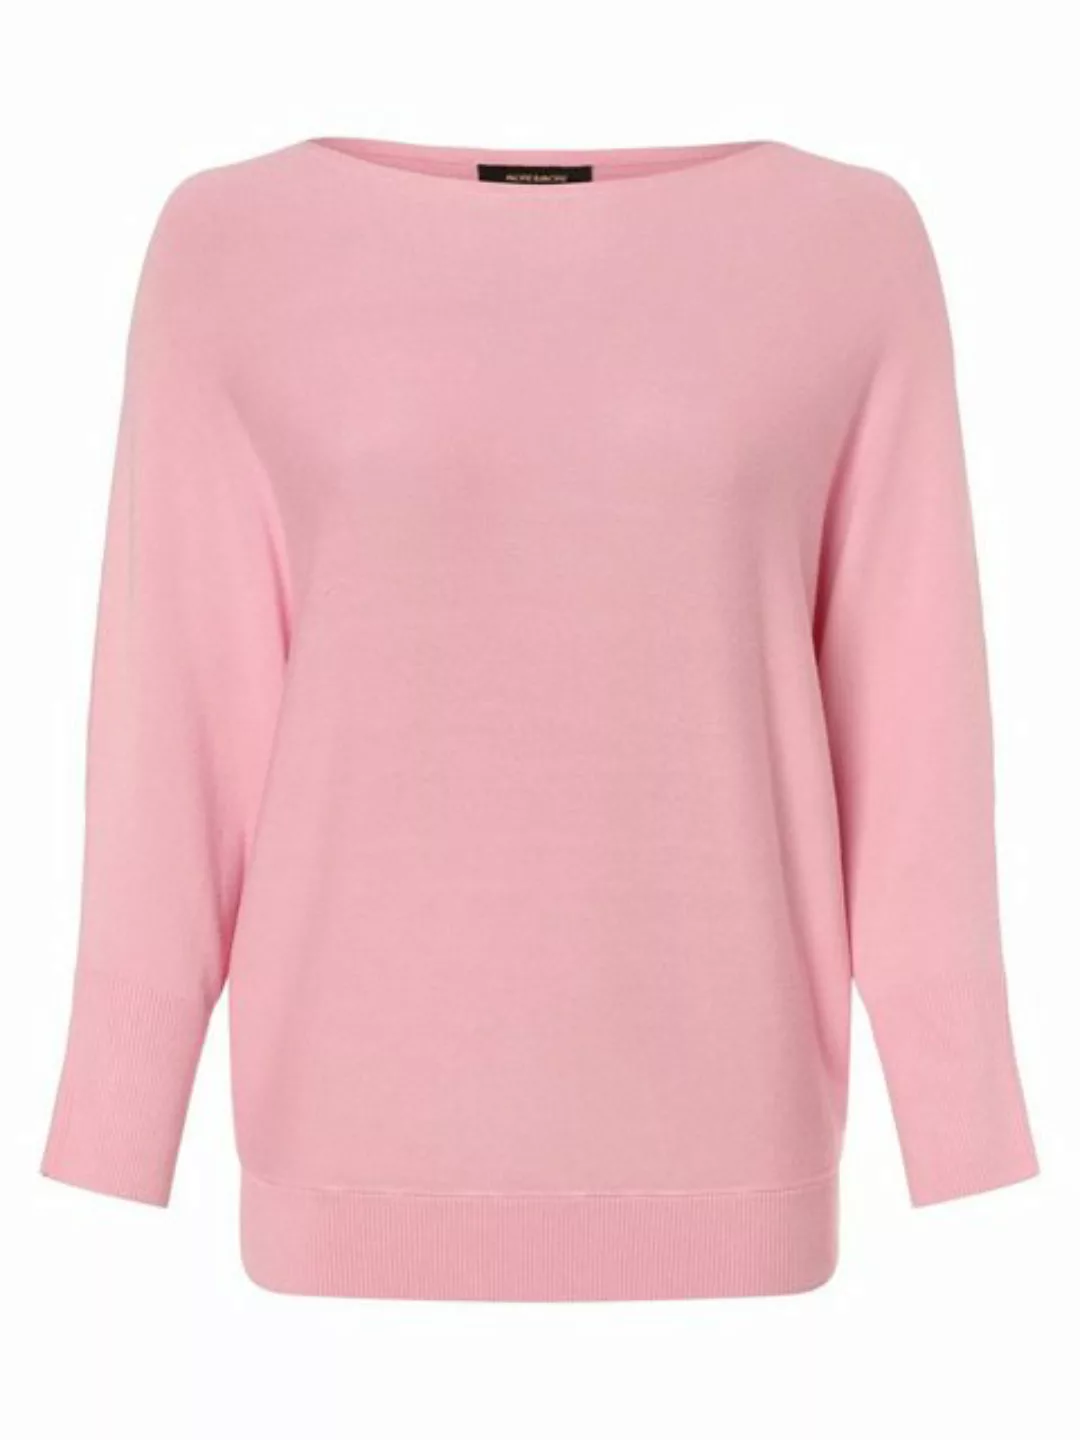 Fledermaus-Pullover, creamy pink, Frühjahrs-Kollektion günstig online kaufen